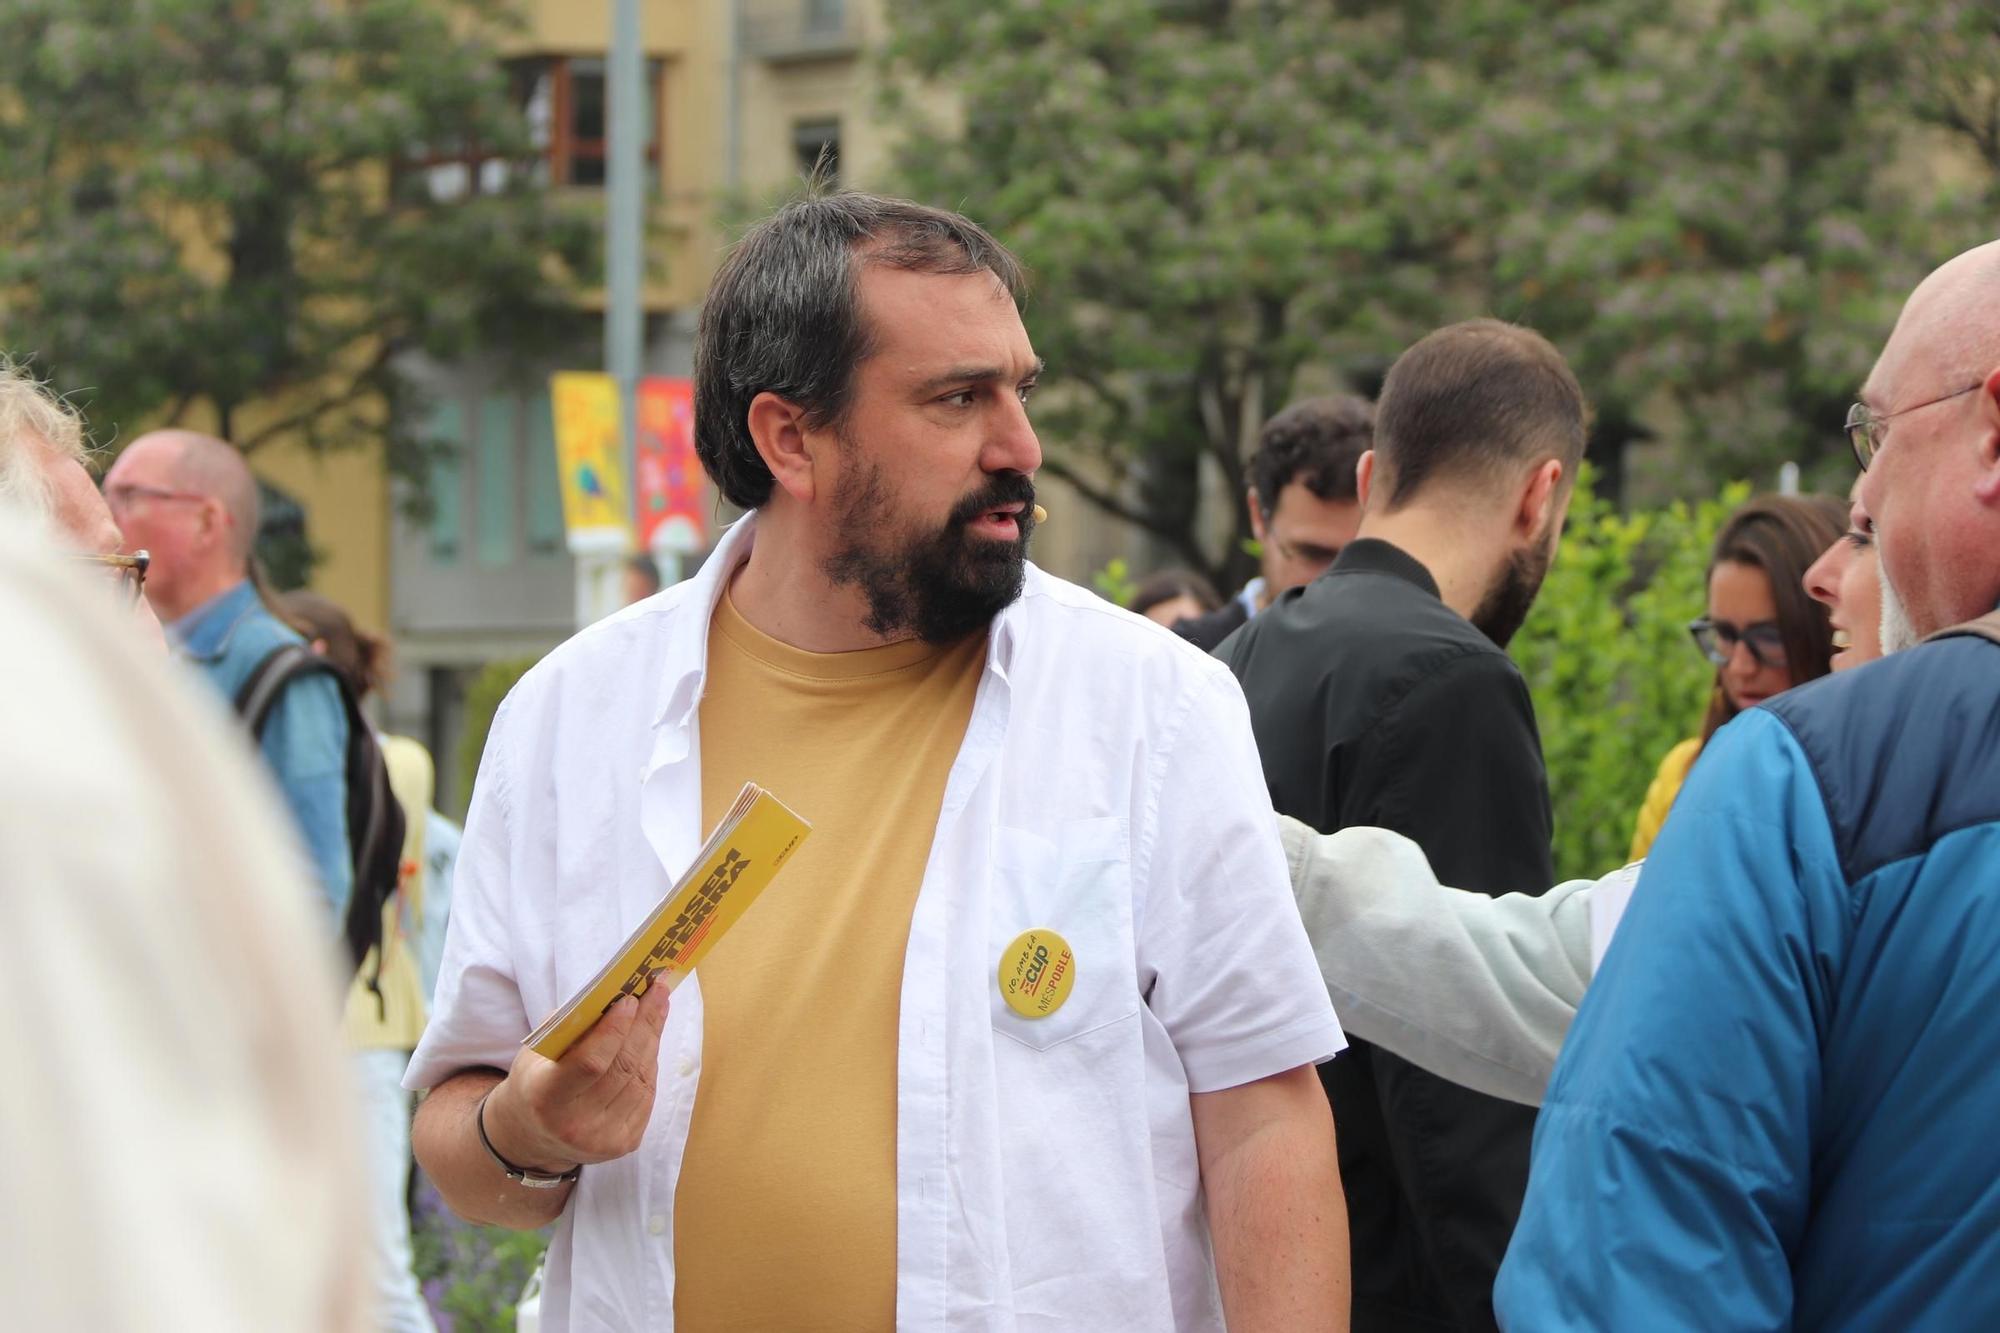 Les imatges de l'acte central de campanya de la CUP a Girona